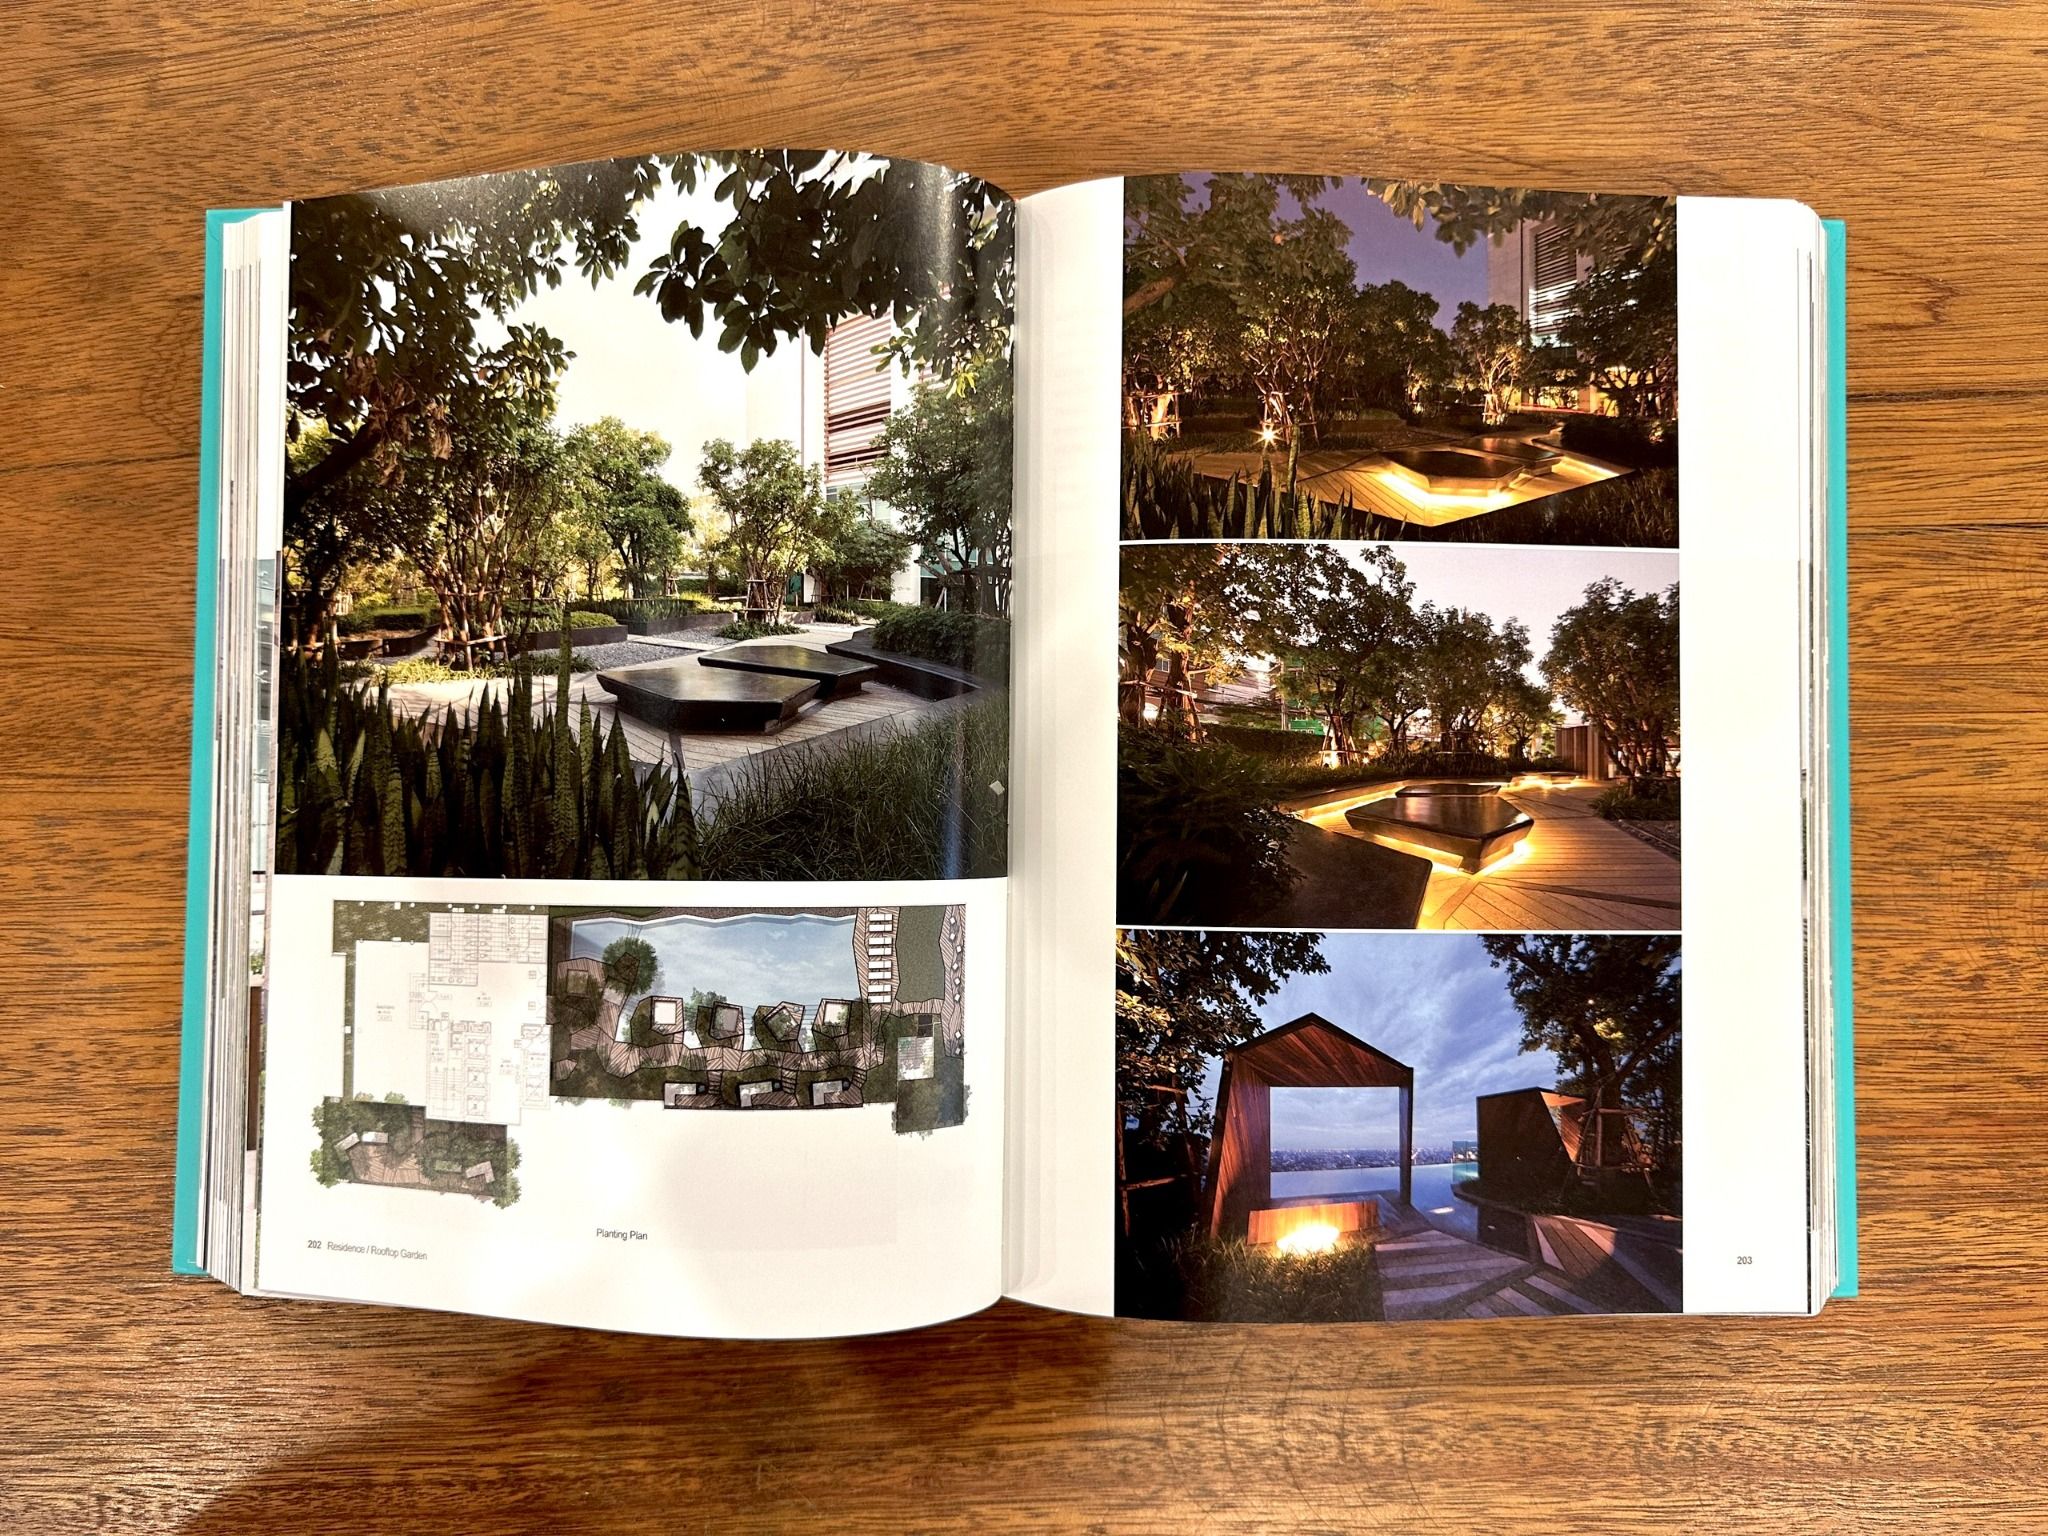  Theme II: Landscape+Architecture. Vol 4 